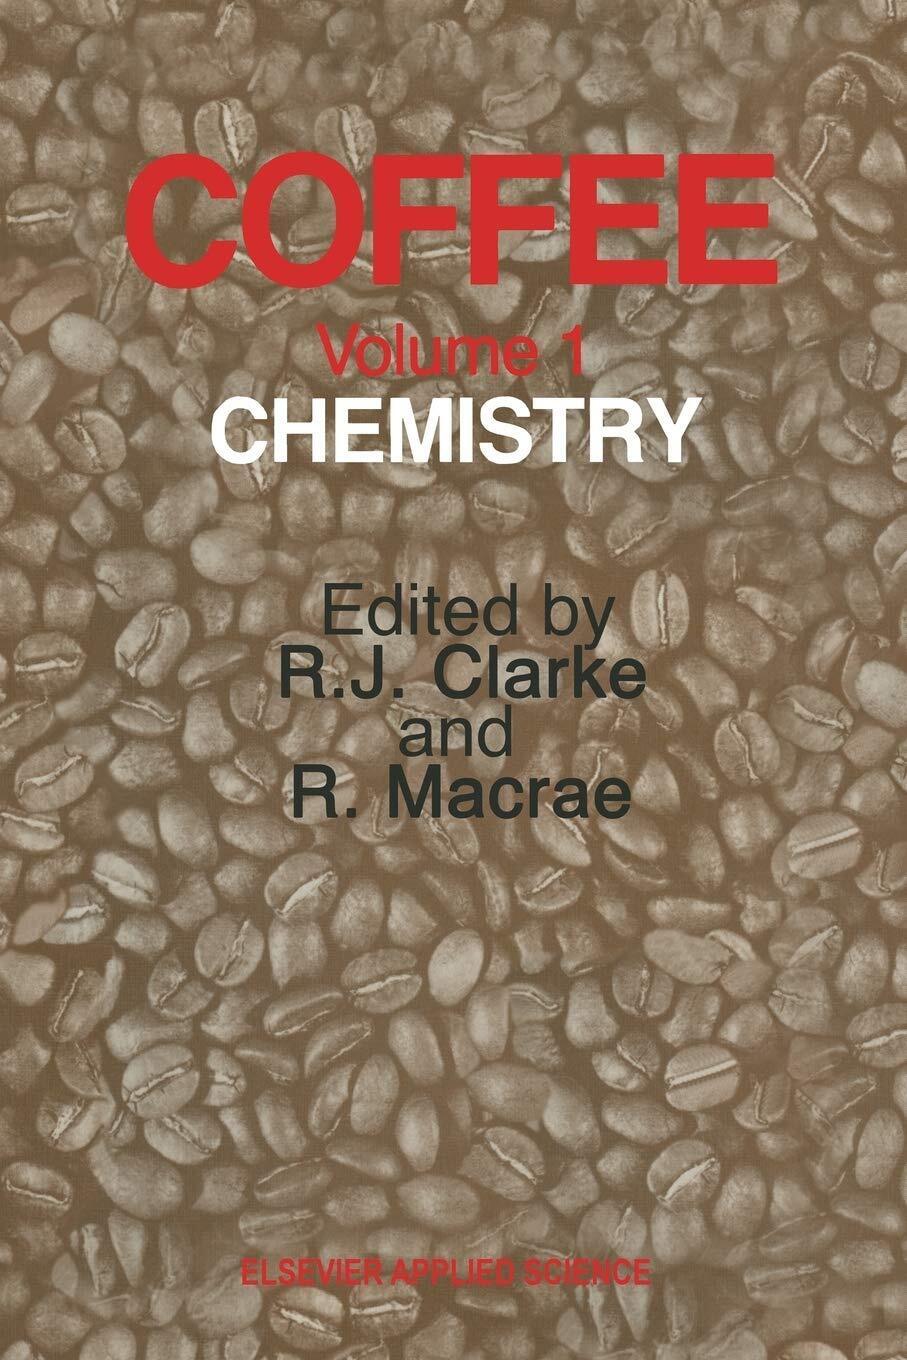 Coffee: Chemistry - R. J. Clarke - Springer, 2011